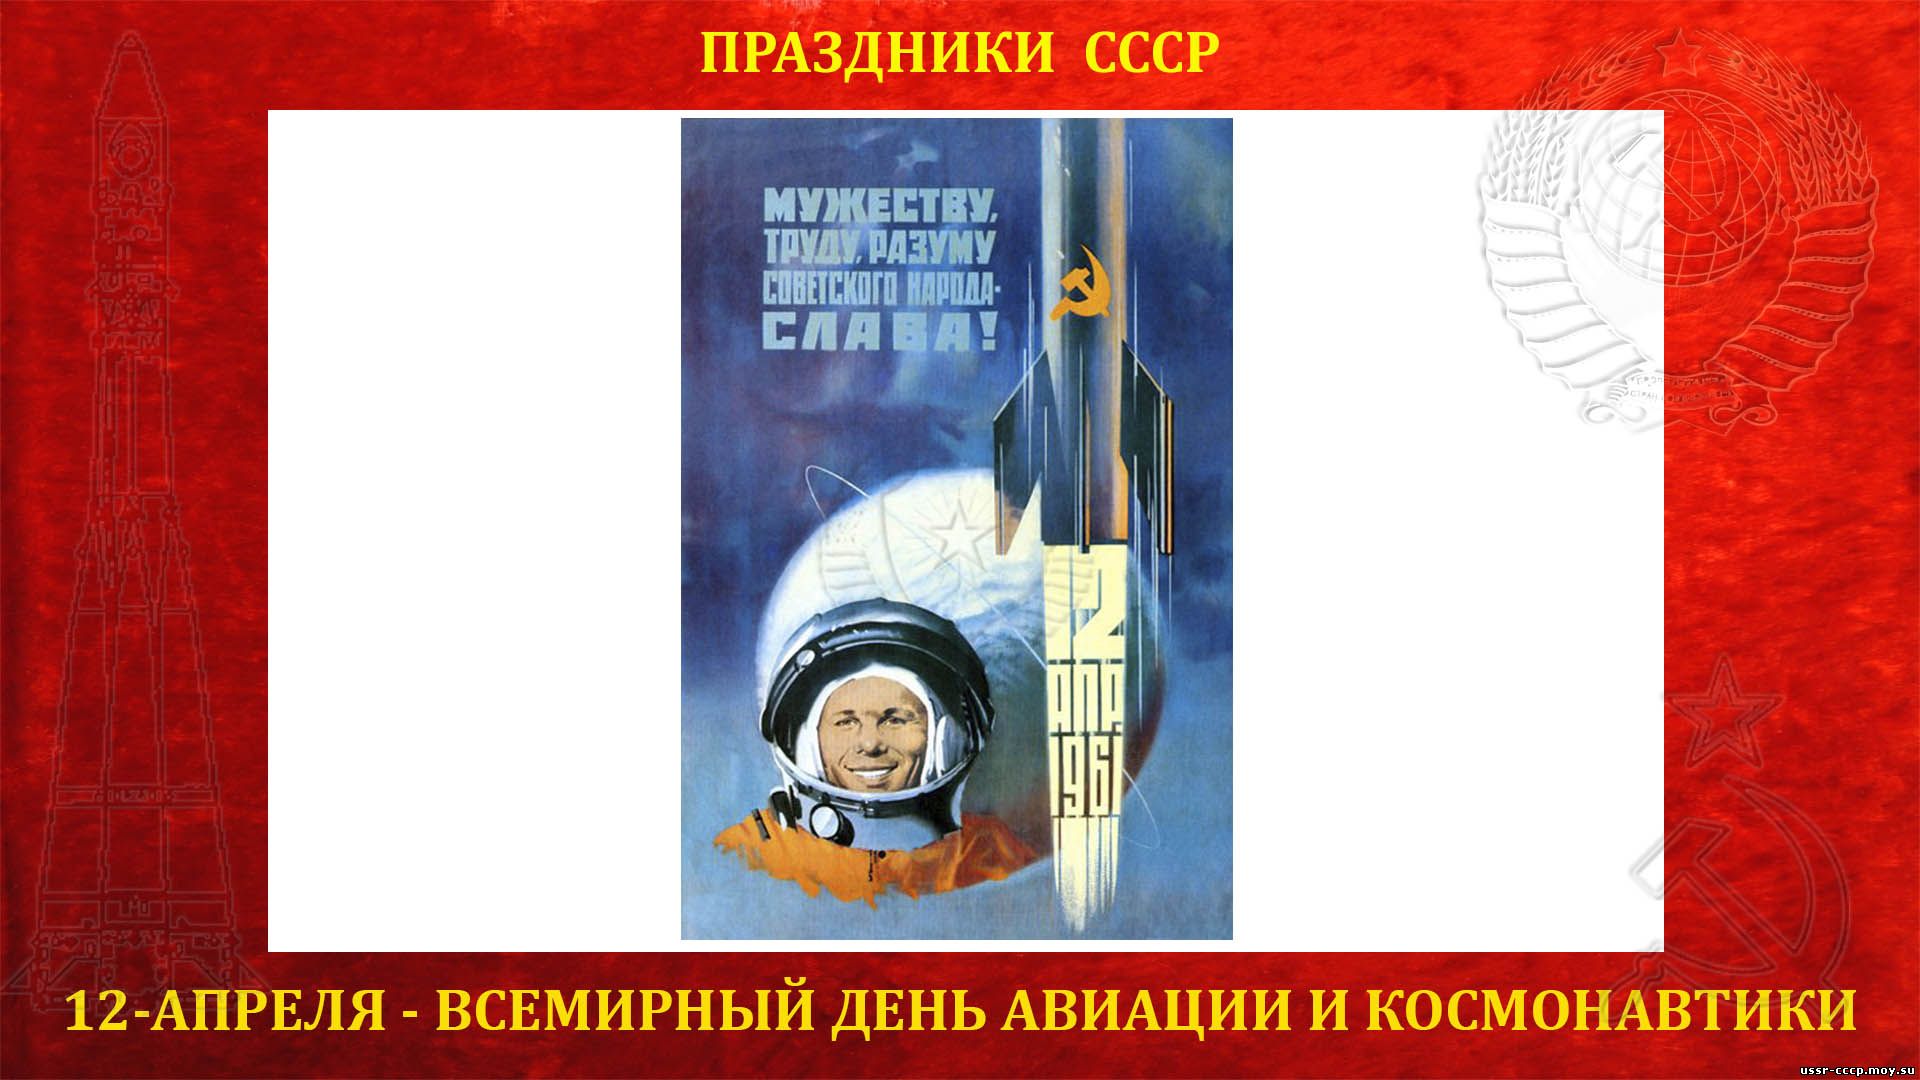 Наша страна 12 апреля 1961. 12 Апреля жену космонавтики. 12 Апреля день Советской космонавтики. Советские открытки с днем космонавтики. 12 Апреля 1961 день космонавтики.